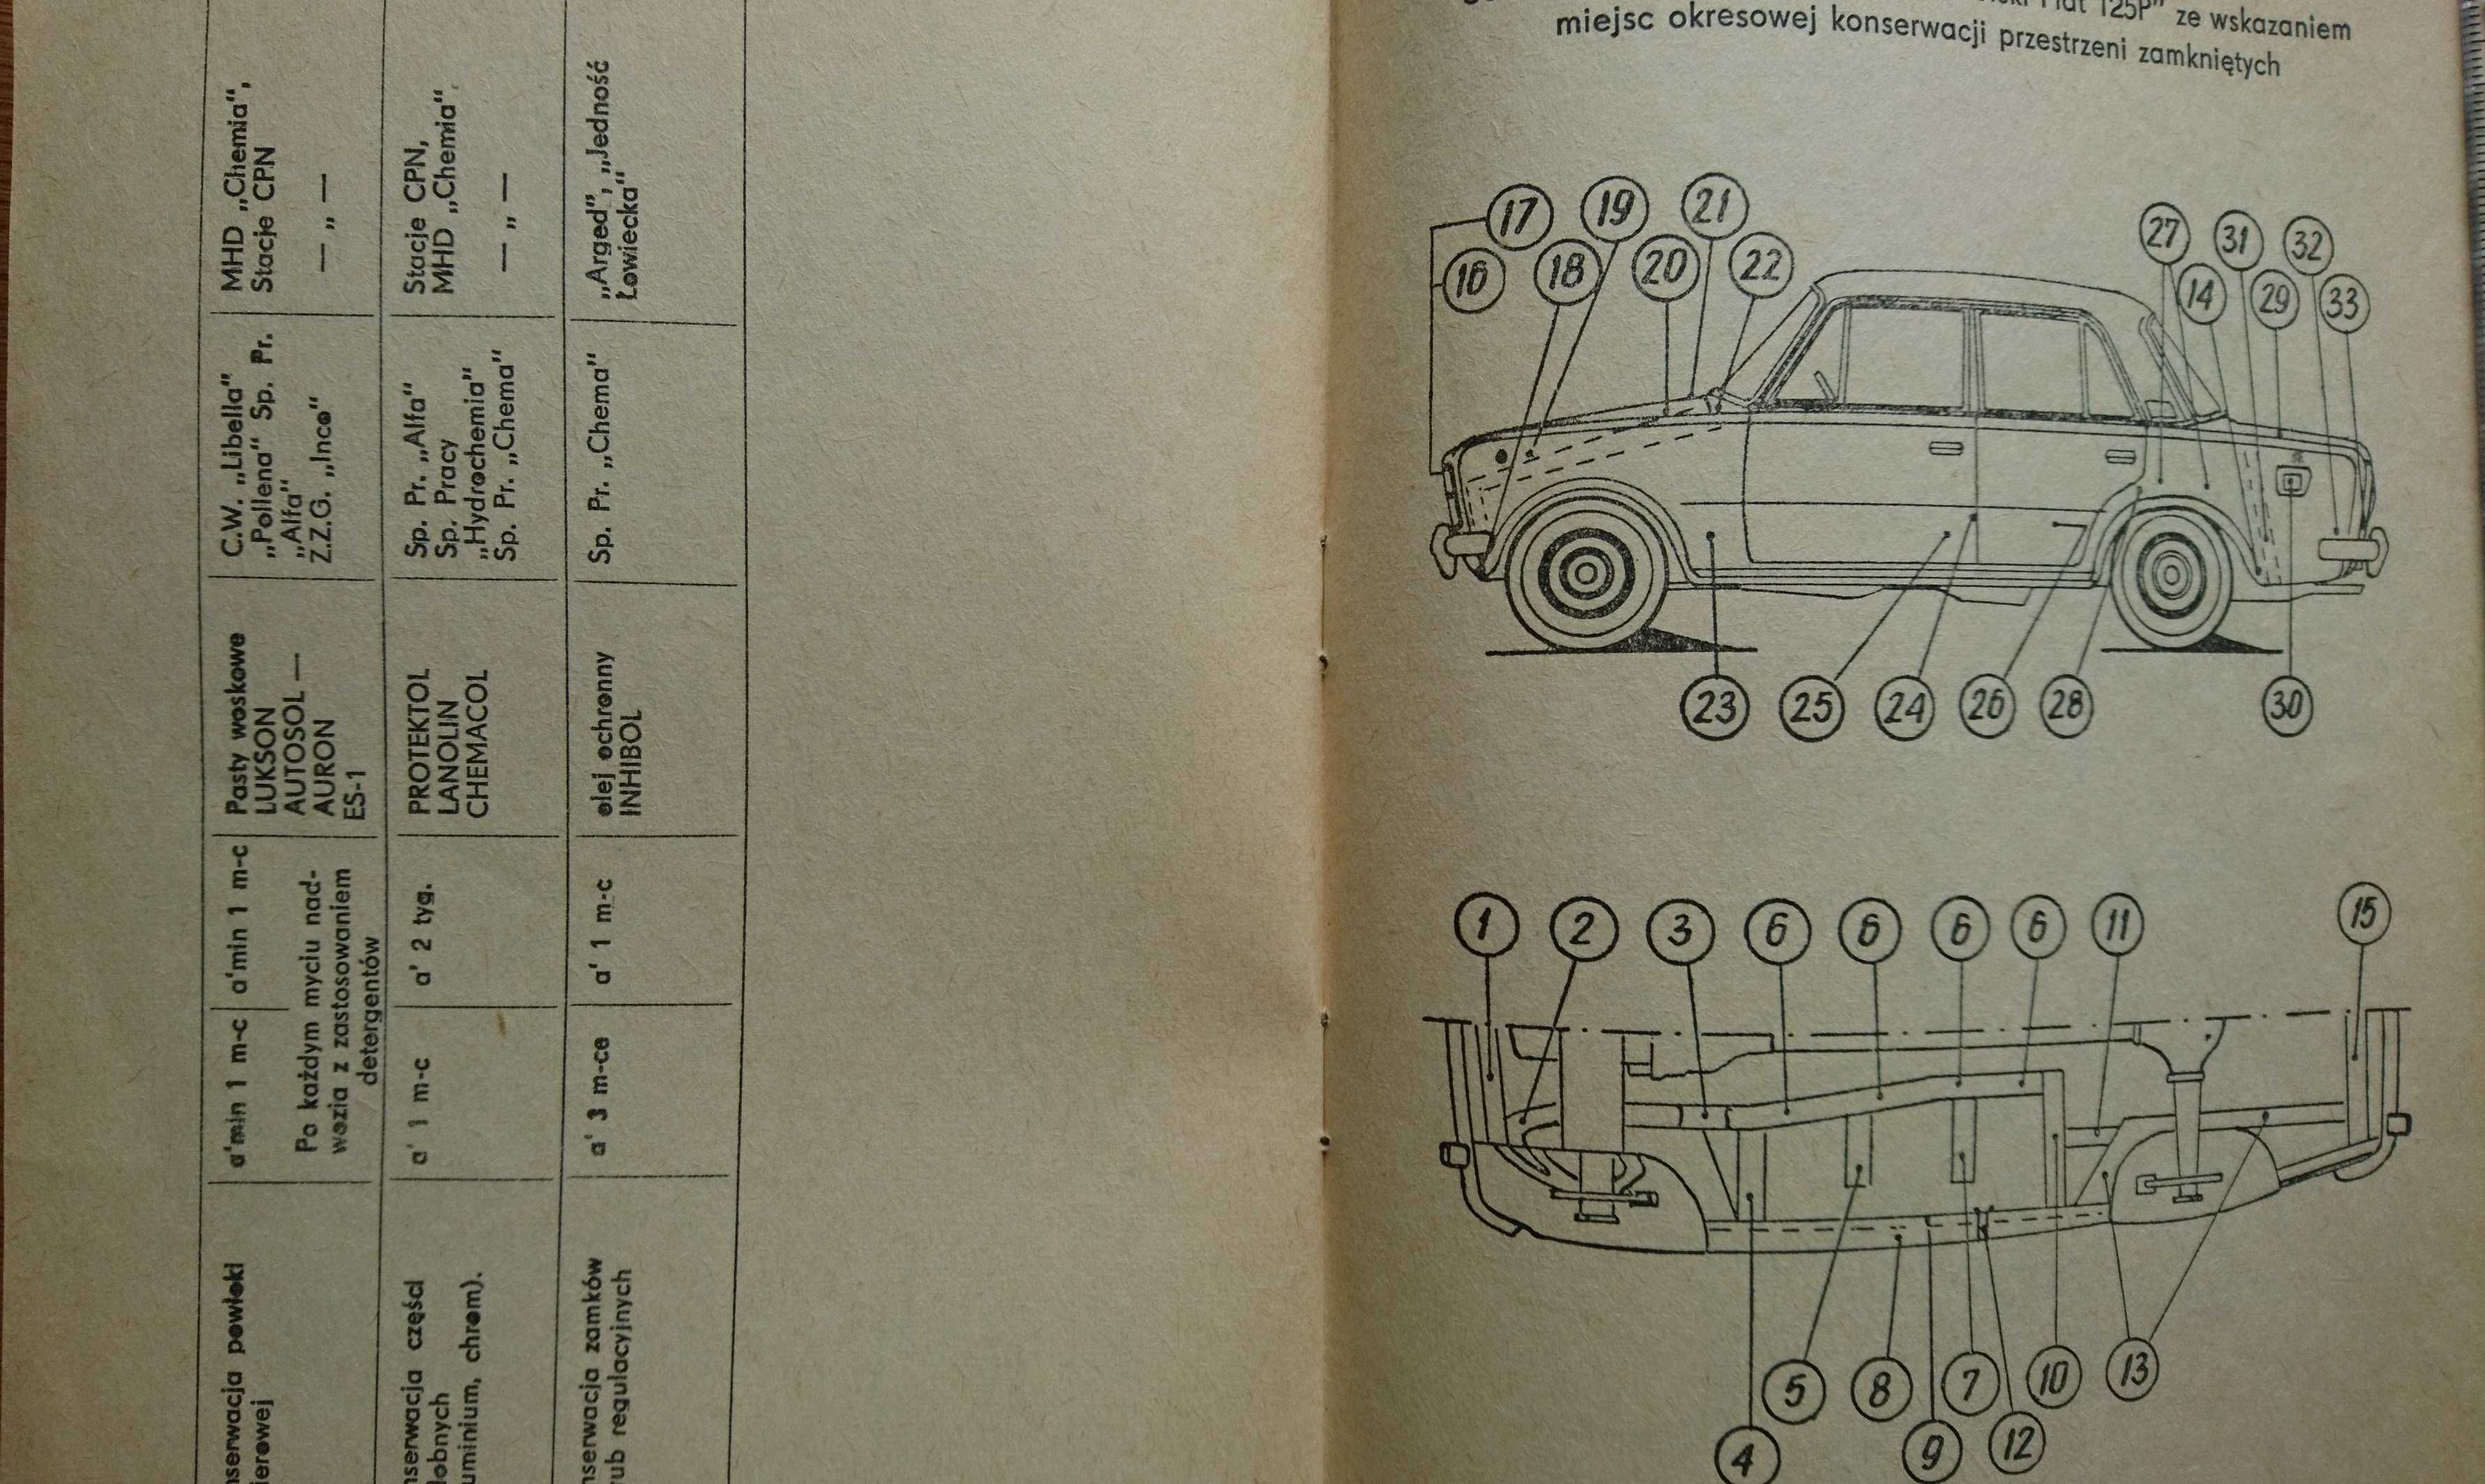 książka  naprawa samochodów FSO 125 P + konserwacja samochodu Fiat 125